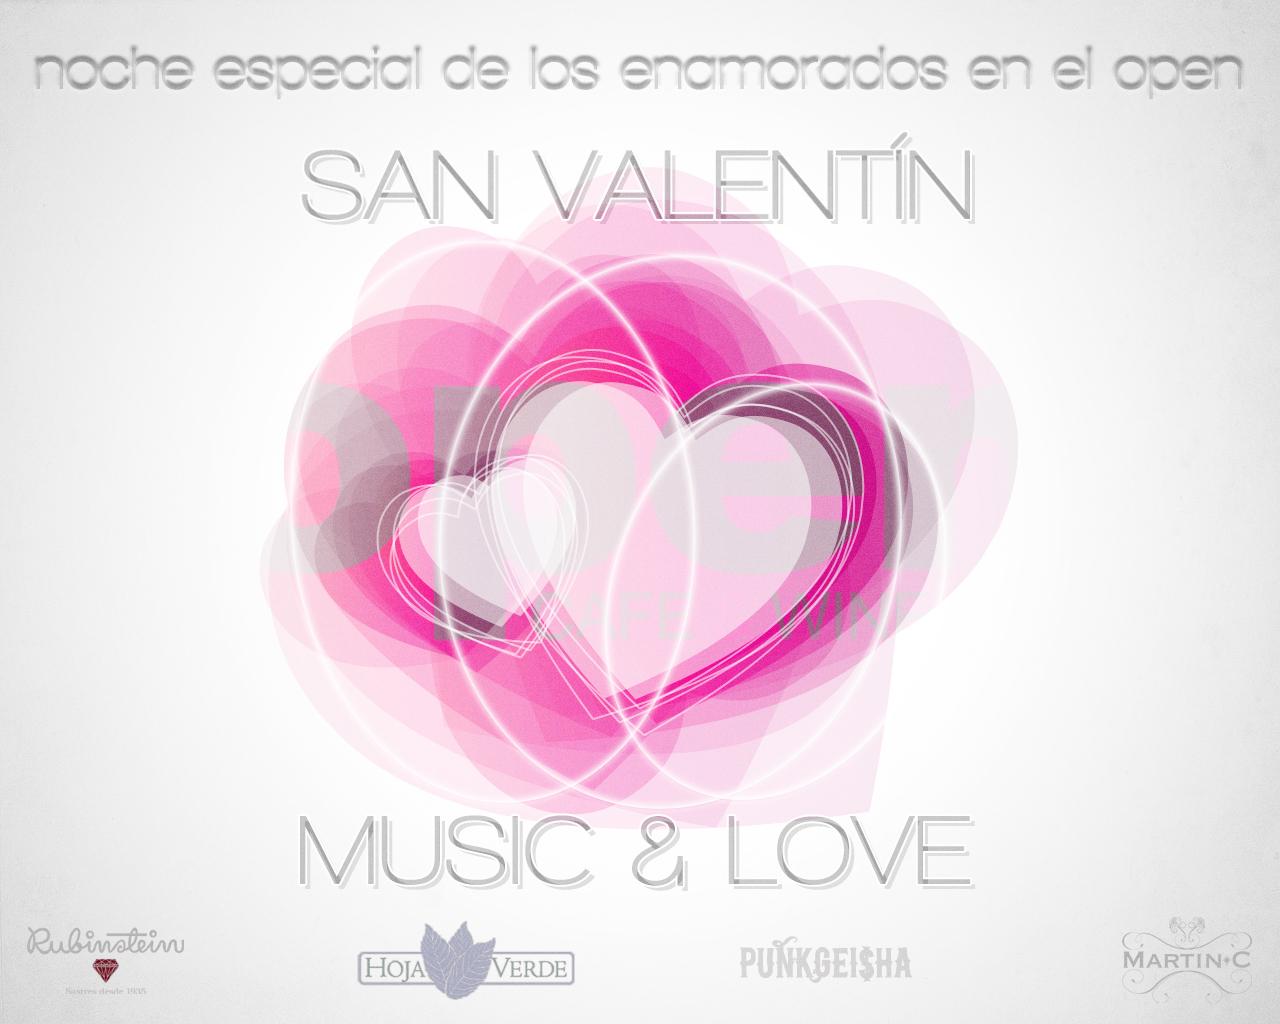 MUSIC & LOVE > VALENTINE'S DAY IN SANTIAGO